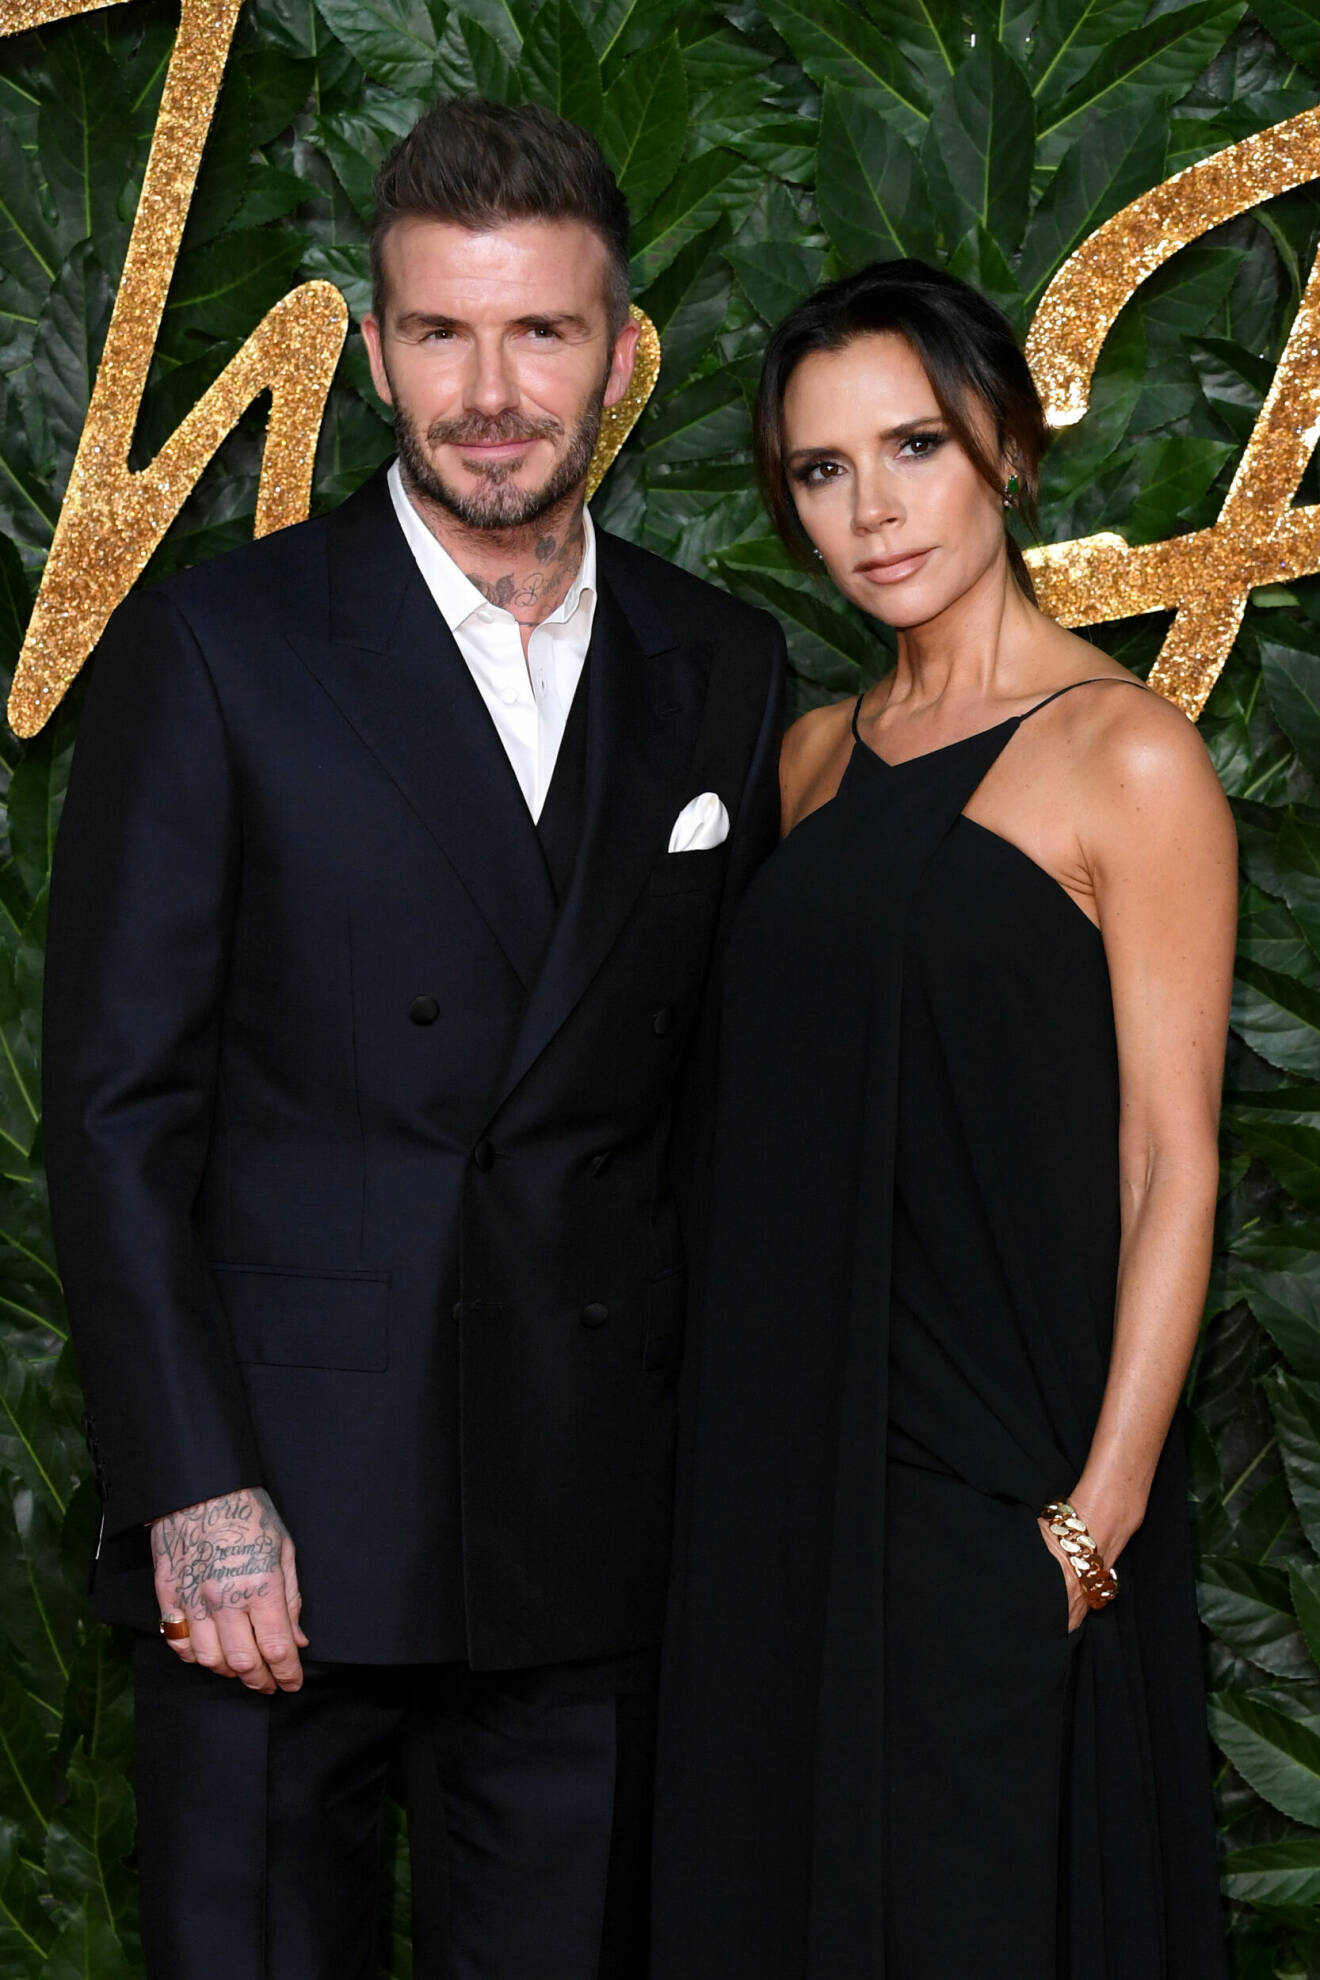 David Beckham och Victoria Beckham har en ”hans” och ”hennes” flygel. Det är en uppgradering från ”hans” och ”hennes” broderiprydda handdukar som var populära förr.